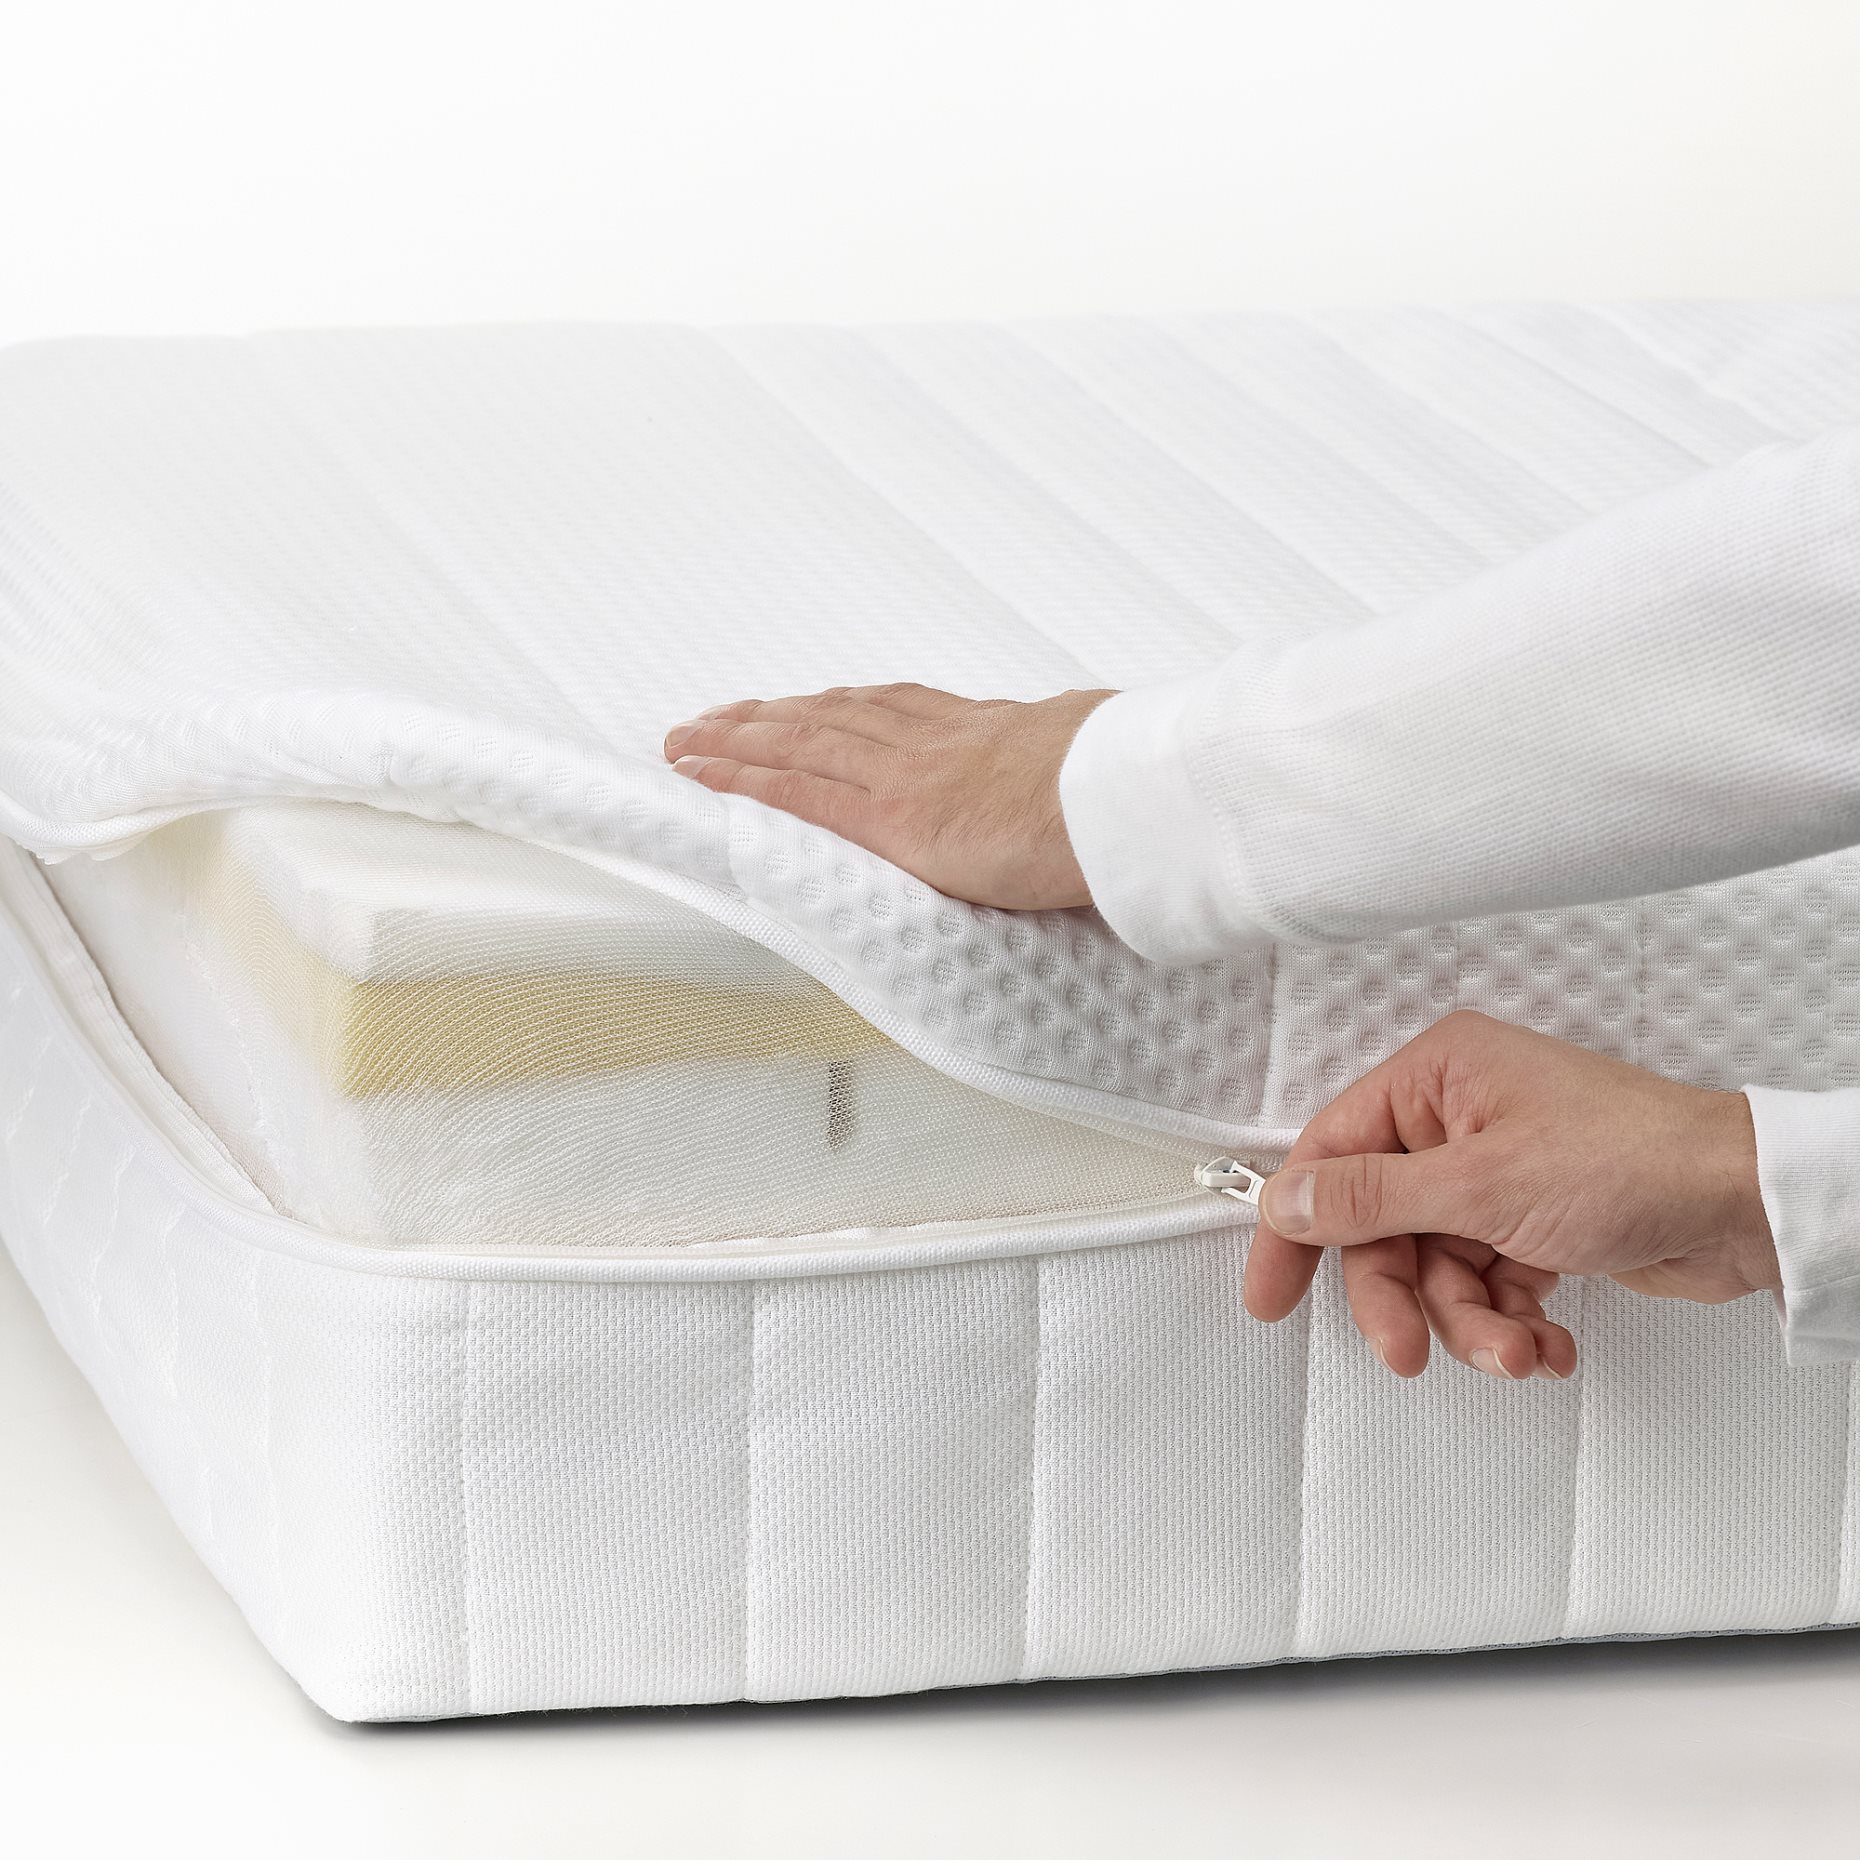 ÅNNELAND, foam mattress/firm, 160x200 cm, 204.817.10